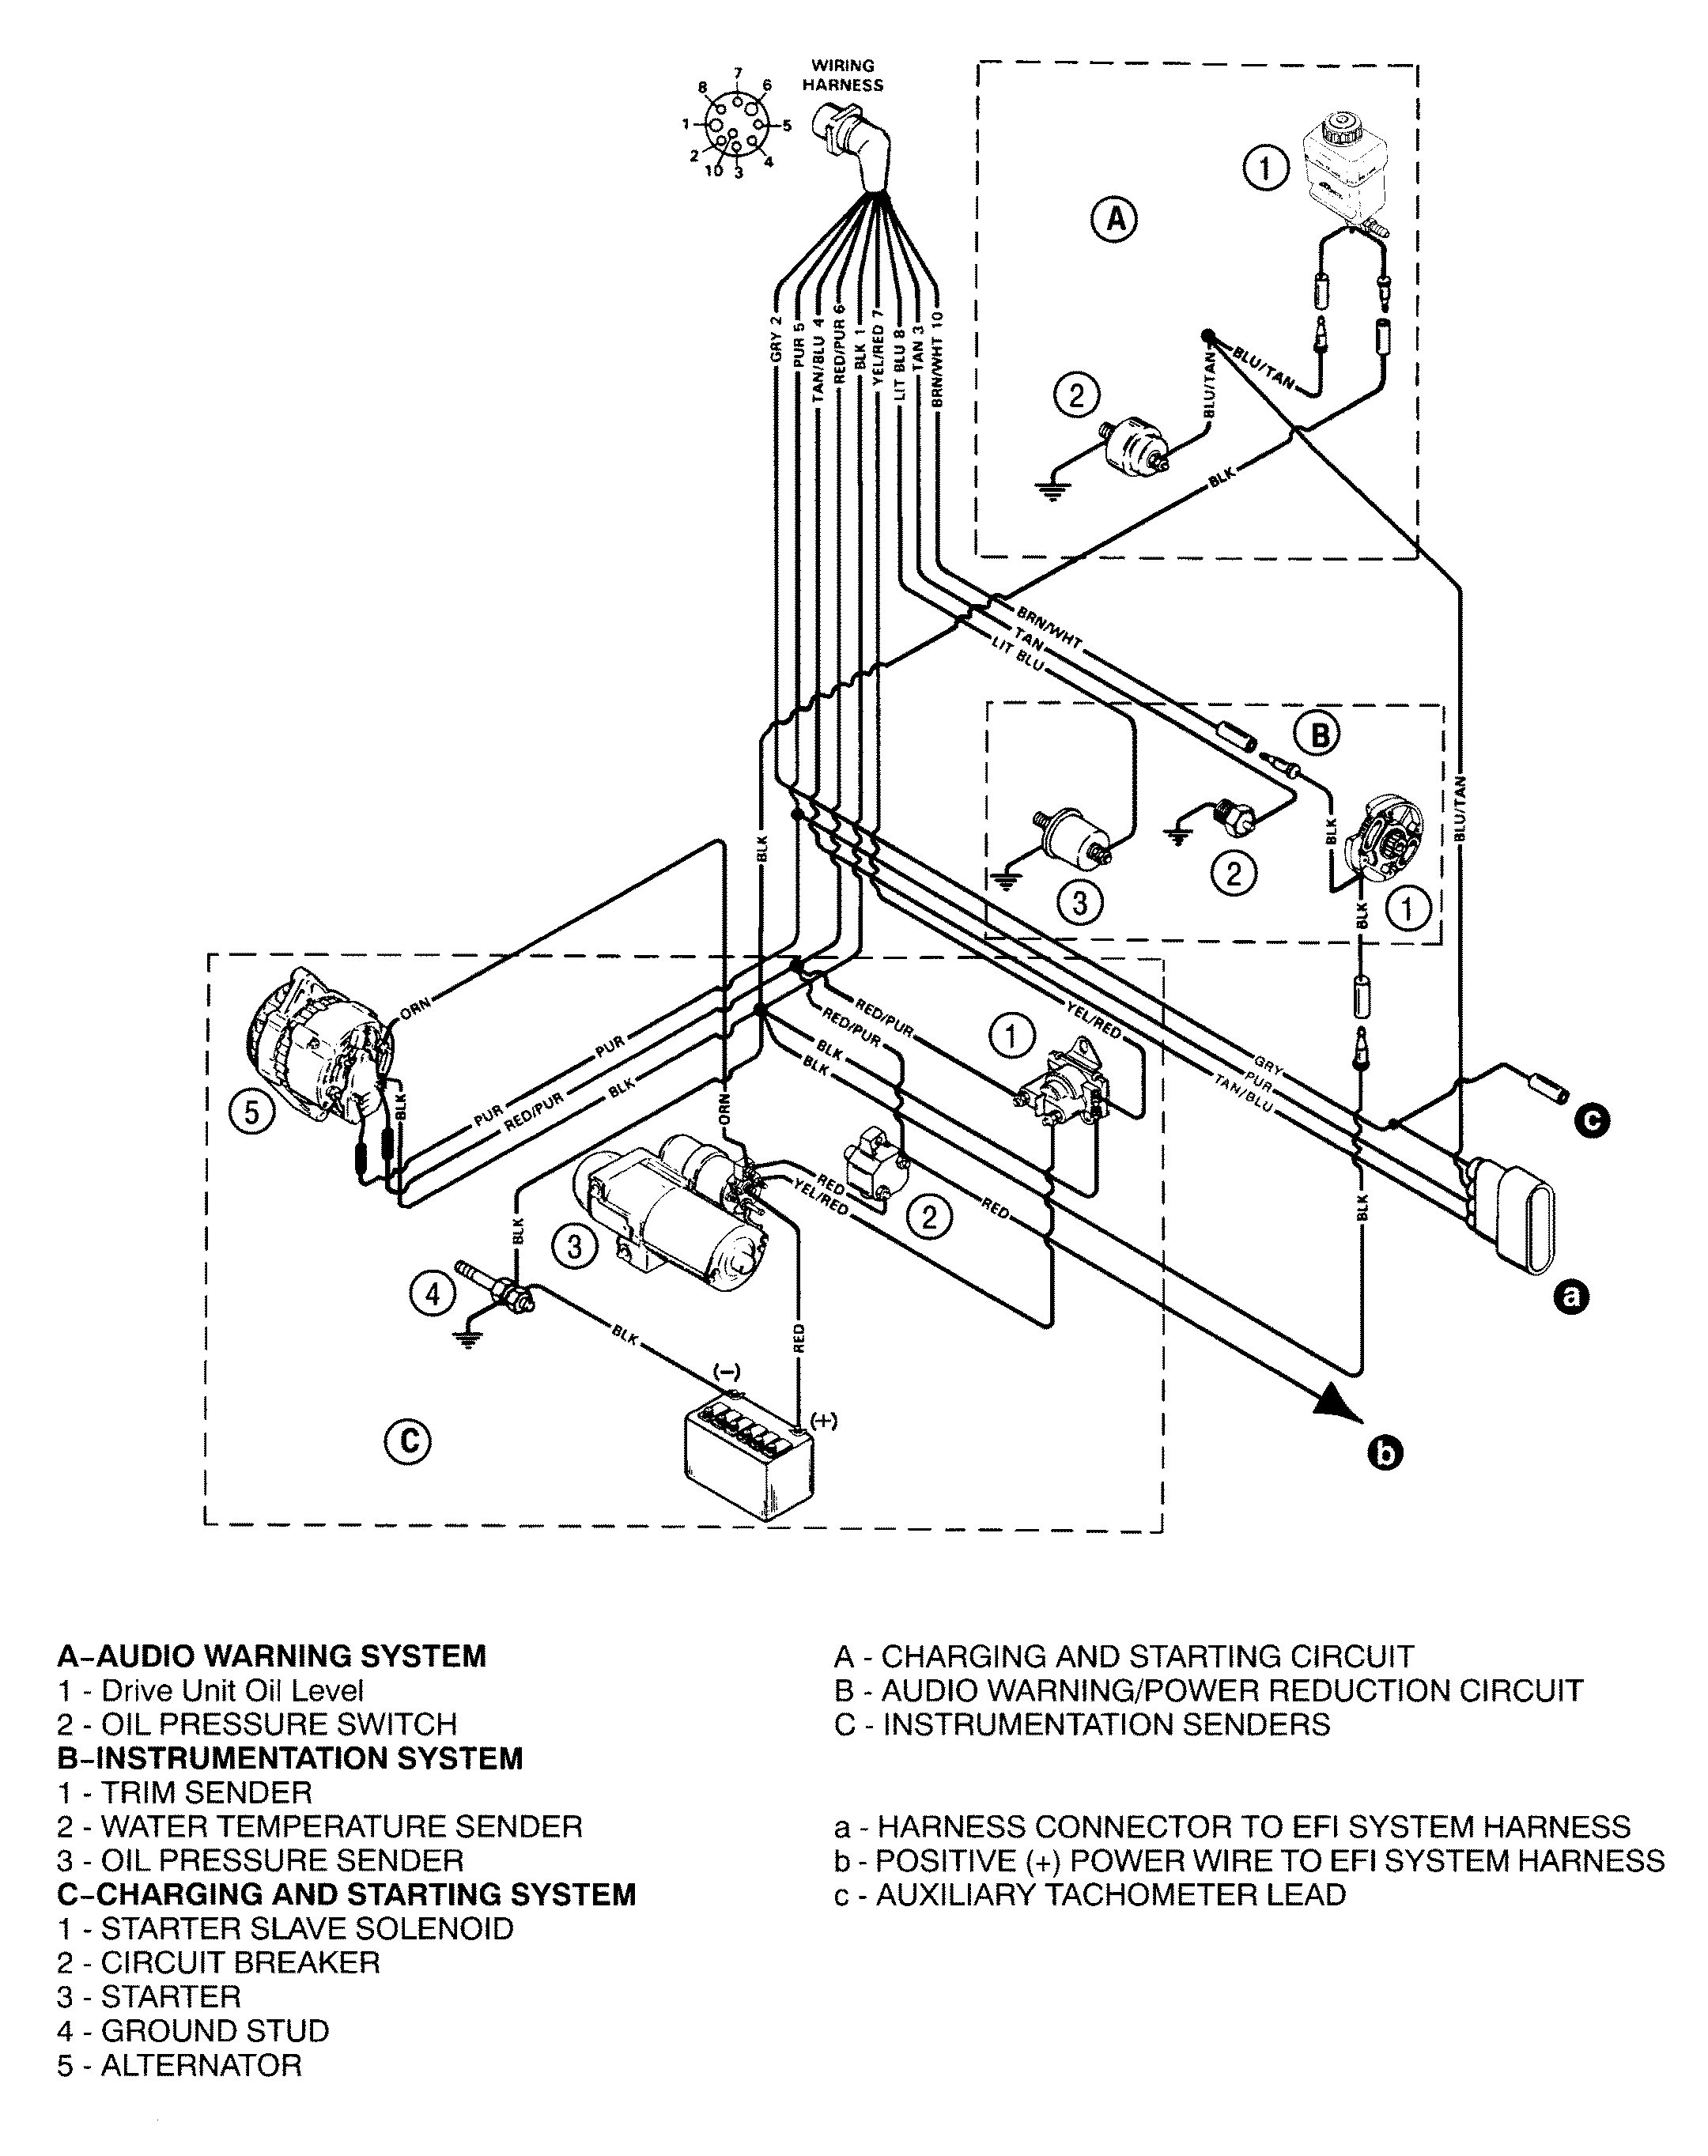 Mercruiser 5 7 Wiring Diagram - Wiring Diagrams Thumbs - Mercruiser 5.7 Wiring Diagram